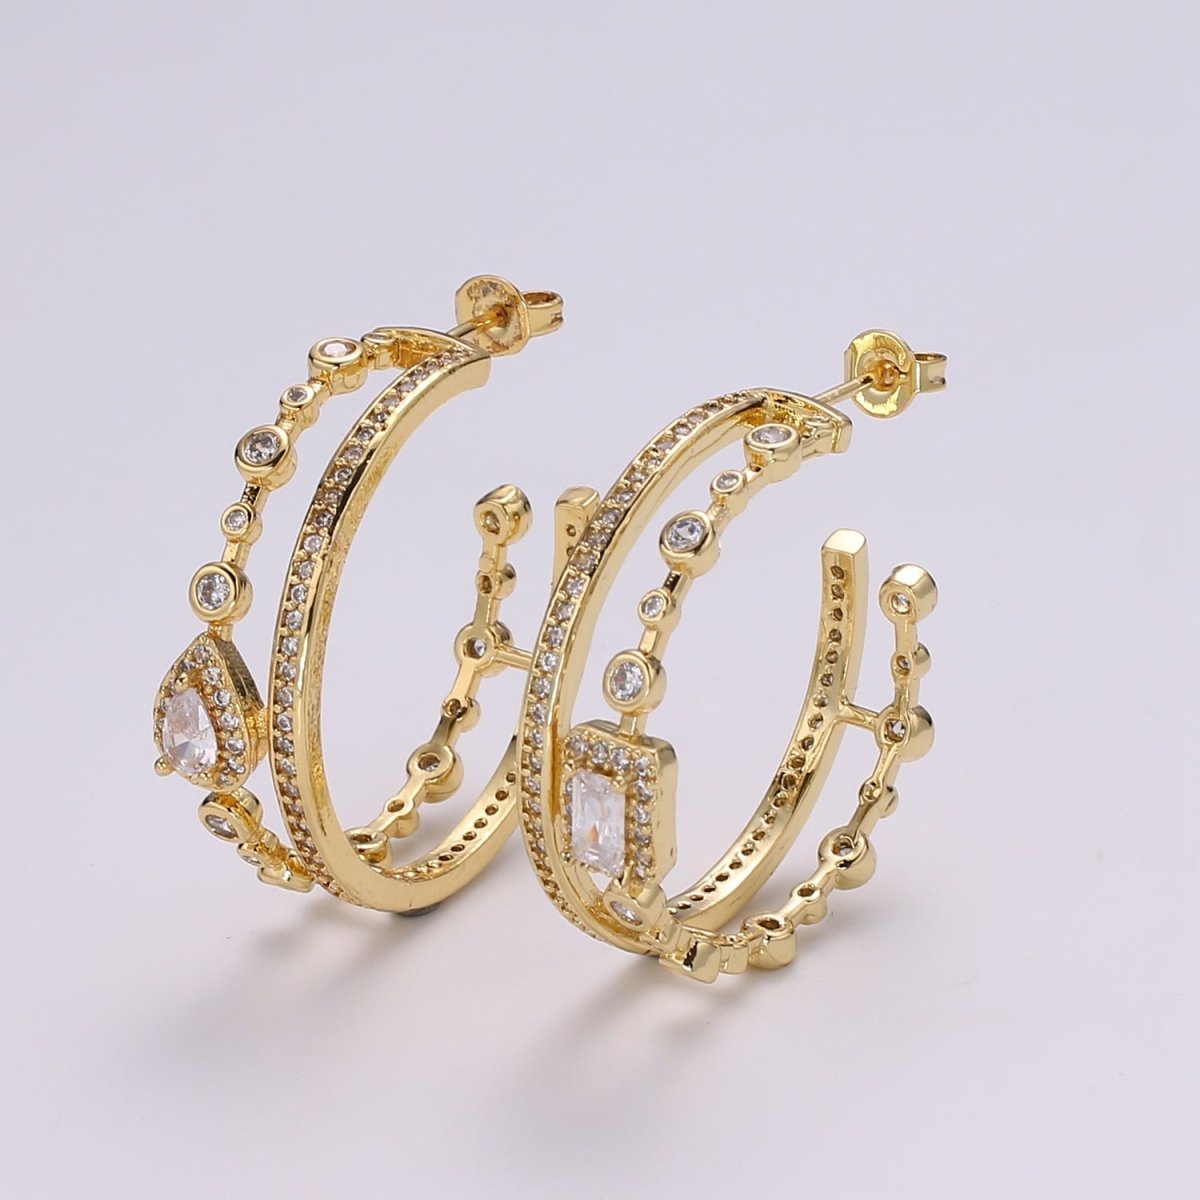 24K Gold Hoop Earring - Mismatched Hoop Earring - Geometric Cz hoop earring for women - Large Hoop 30MM Earring gift idea P-057 - DLUXCA